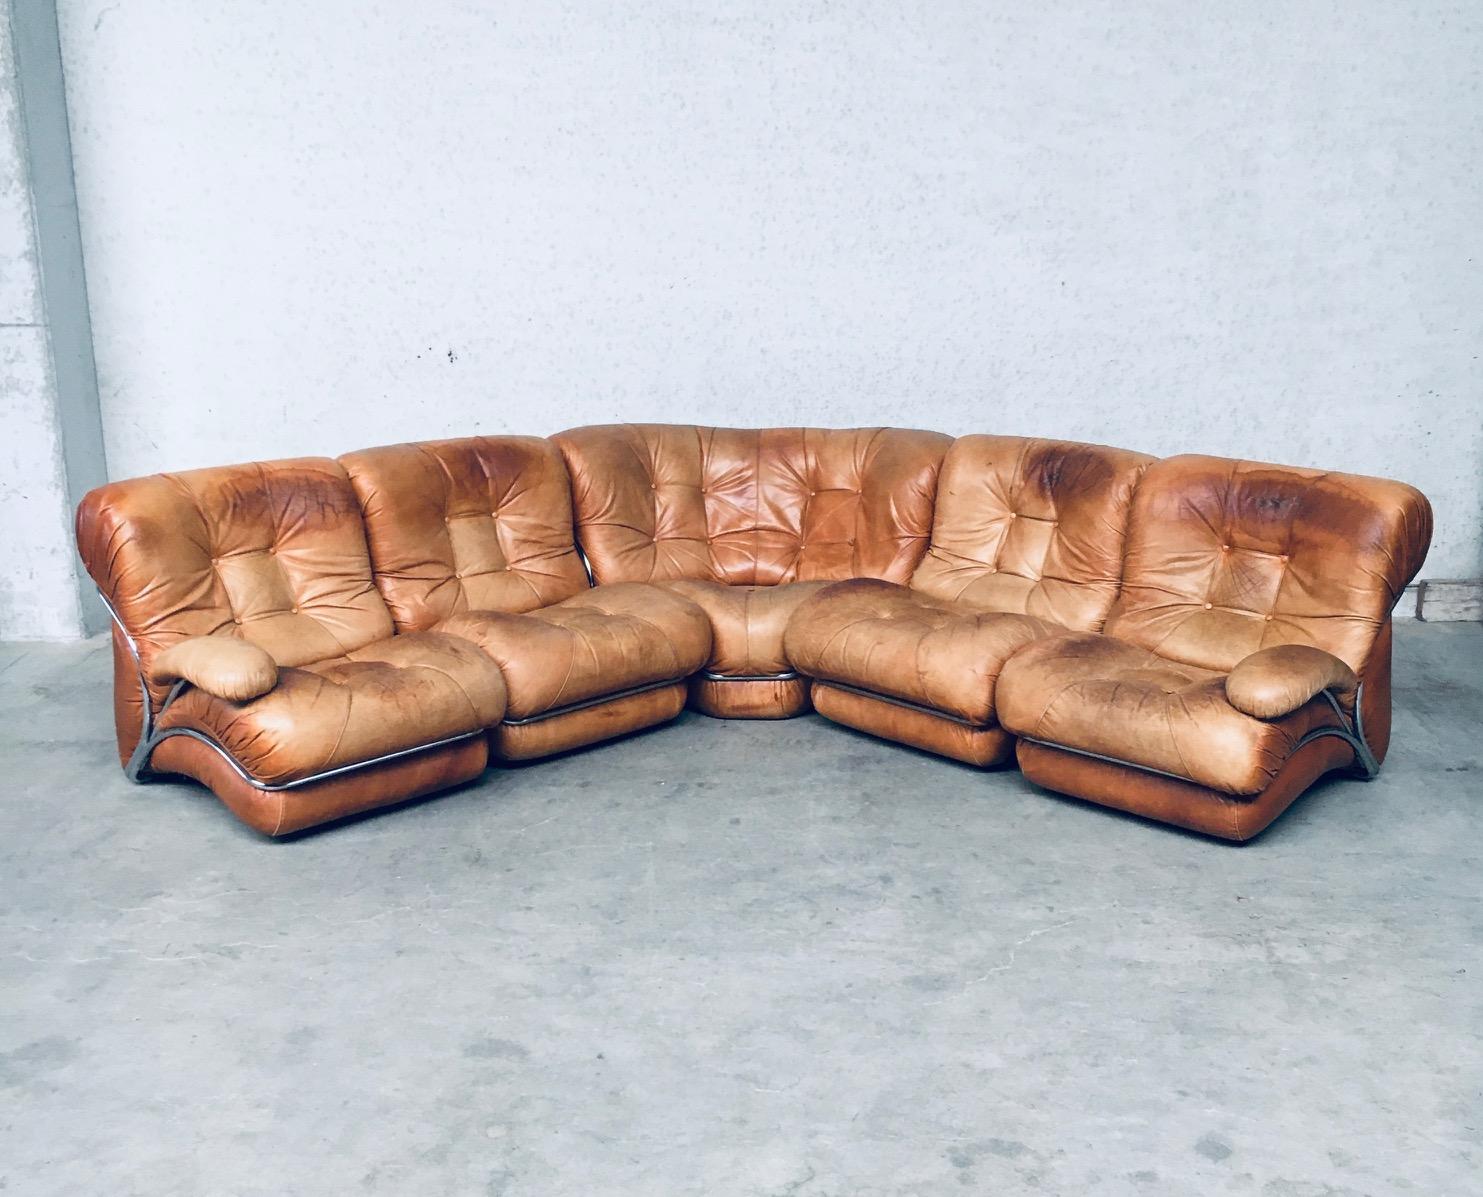 Vintage Midcentury Modern Italian Design 'COROLLA' Leather Sectional Sofa von I.P.E. Italy 1970's. Markiert auf der Unterseite. Cognacfarbenes Leder auf verchromtem Metallgestell mit abnehmbaren Armlehnen auf 2 Sofateilen. 5 Sektionalteile; 4 Sessel